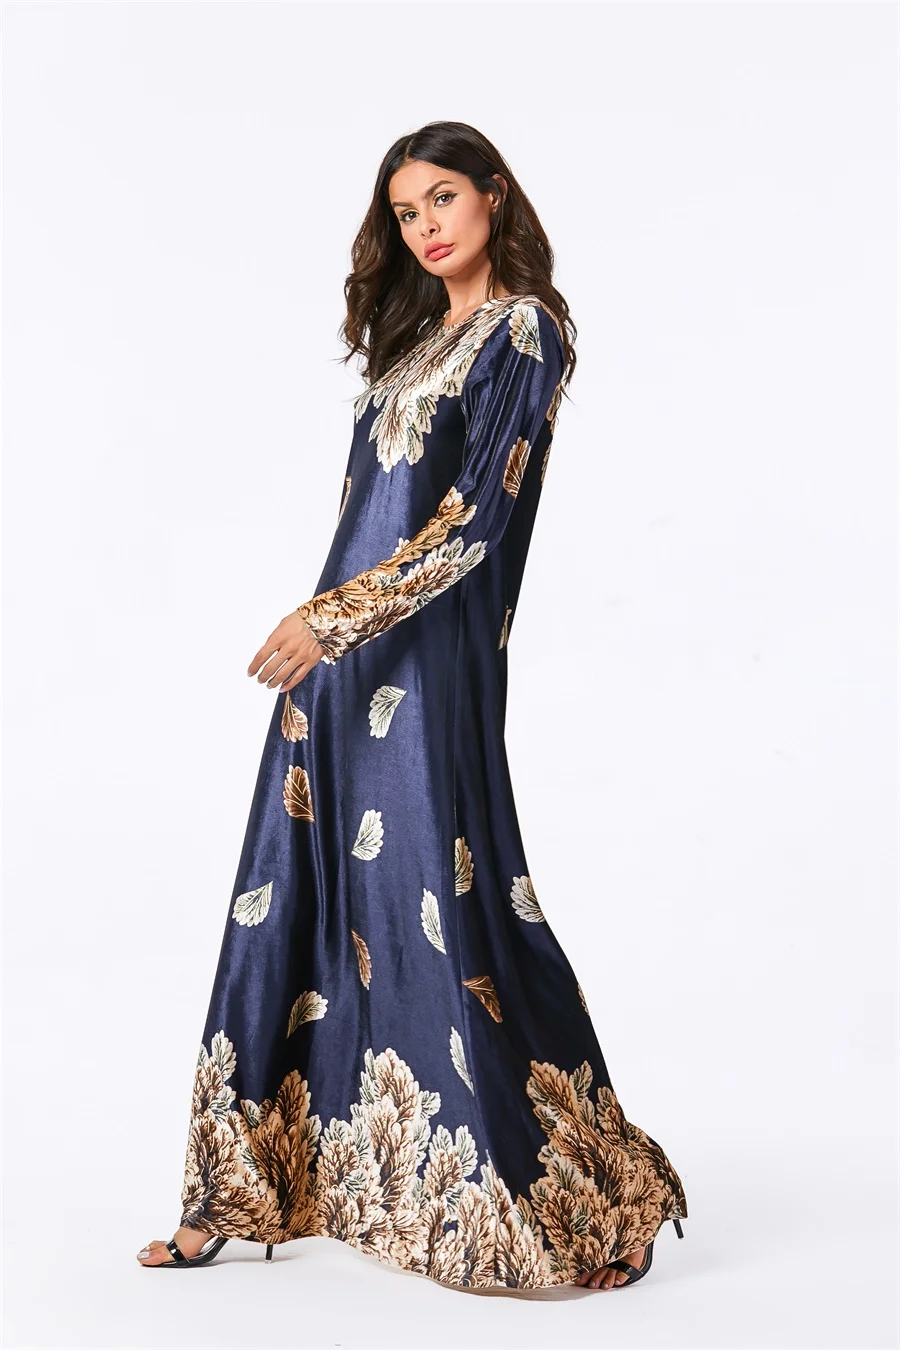 Siskakia бархатное платье женские Платья-макси с длинным рукавом элегантного размера плюс с принтом листьев осенняя одежда мусульманская Арабская одежда синий